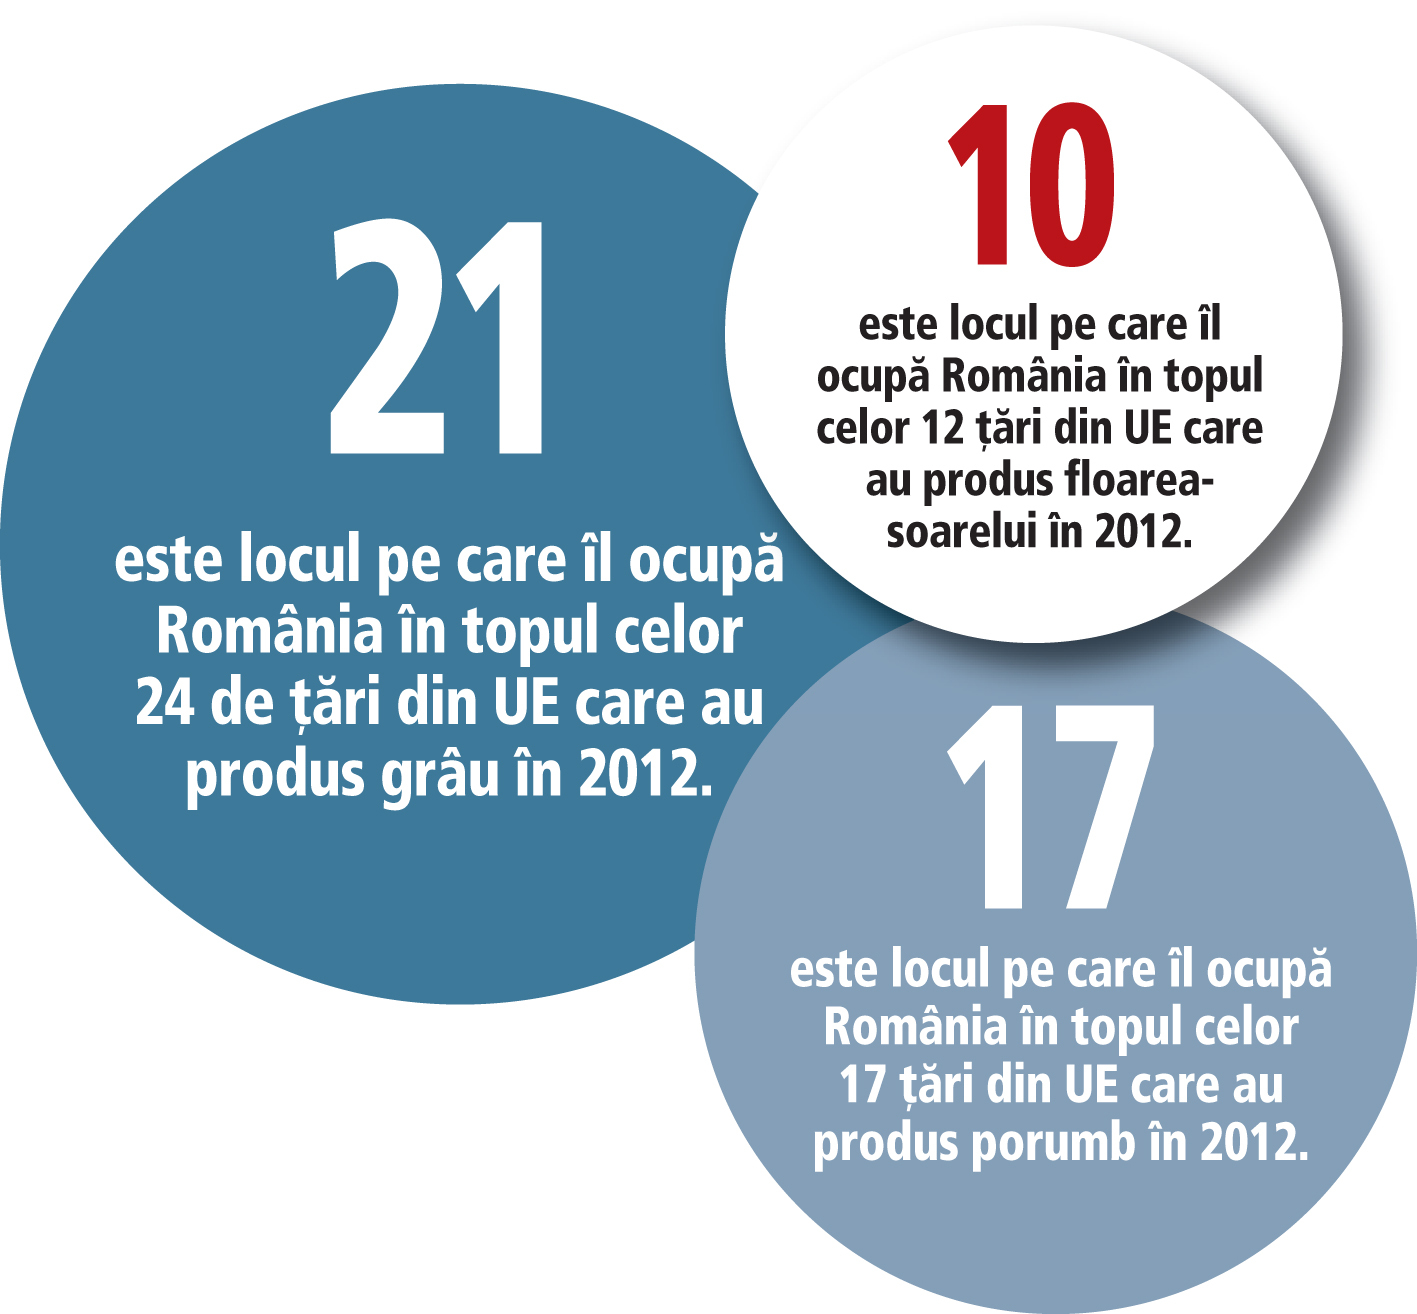 România, codaşa Europei la productivitate în agricultură: la grâu în aceeaşi ligă cu Estonia, la porumb pe ultimul loc